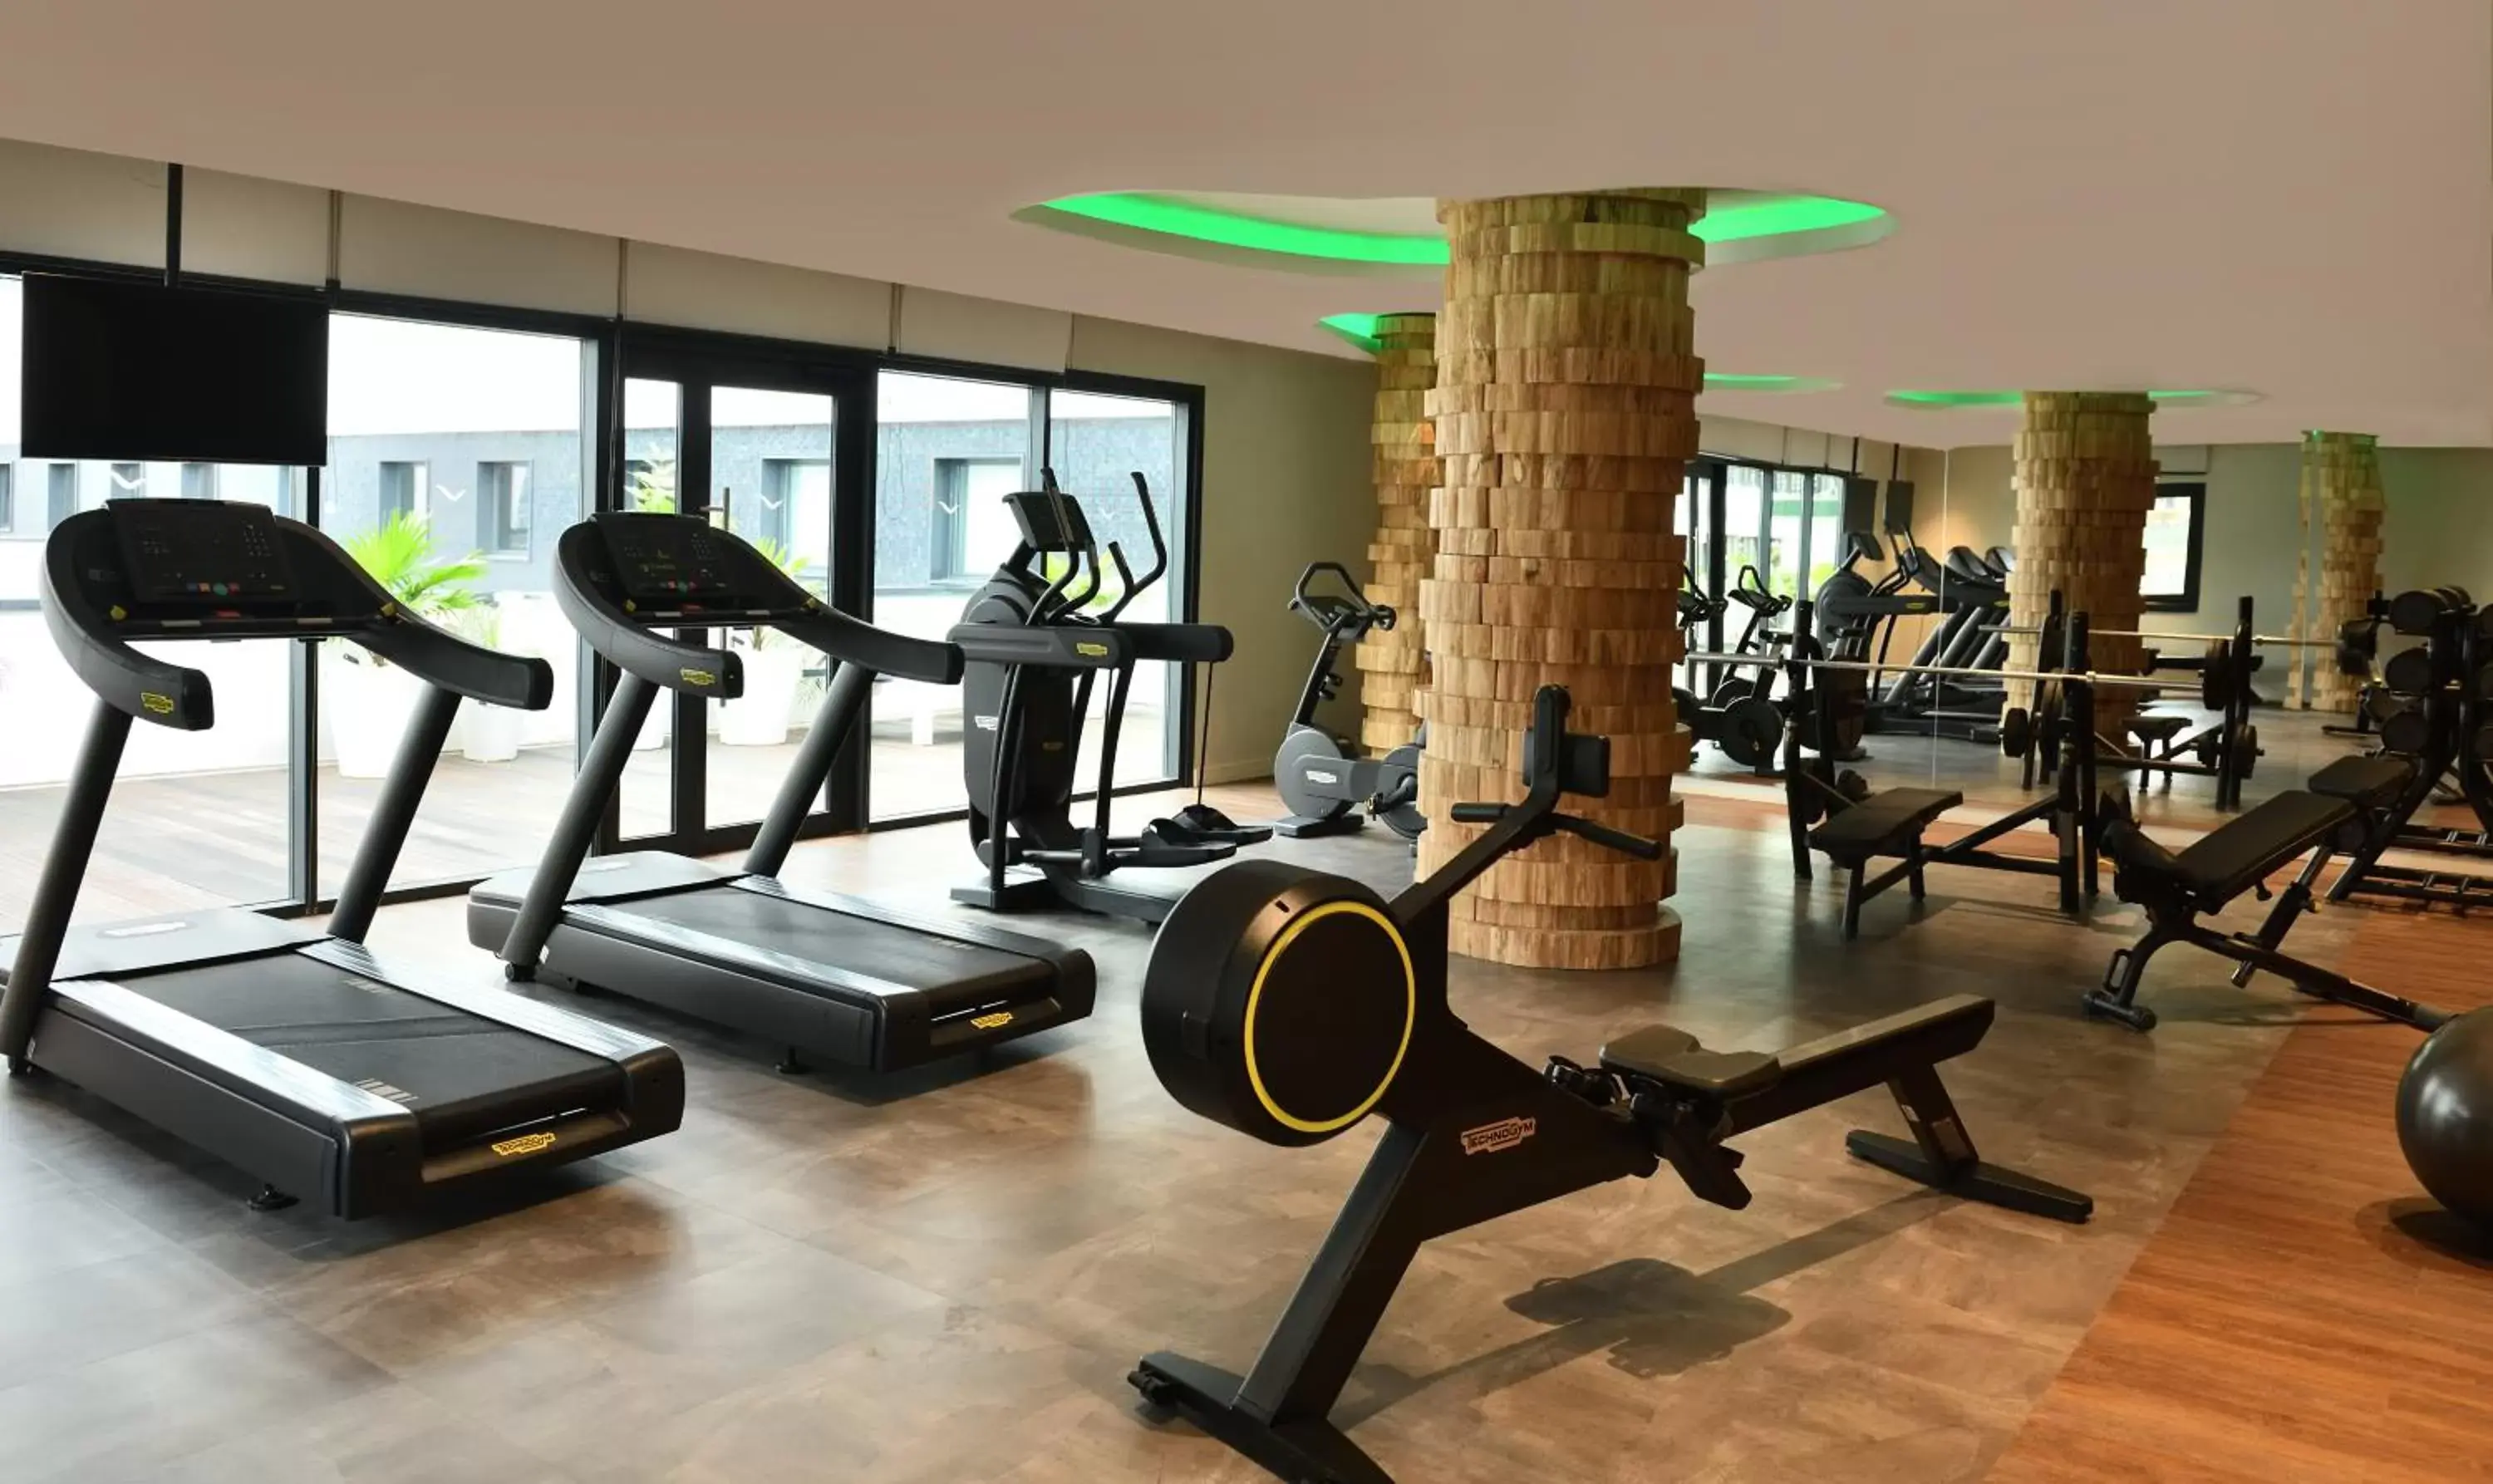 Fitness centre/facilities, Fitness Center/Facilities in Mövenpick Hotel Abidjan